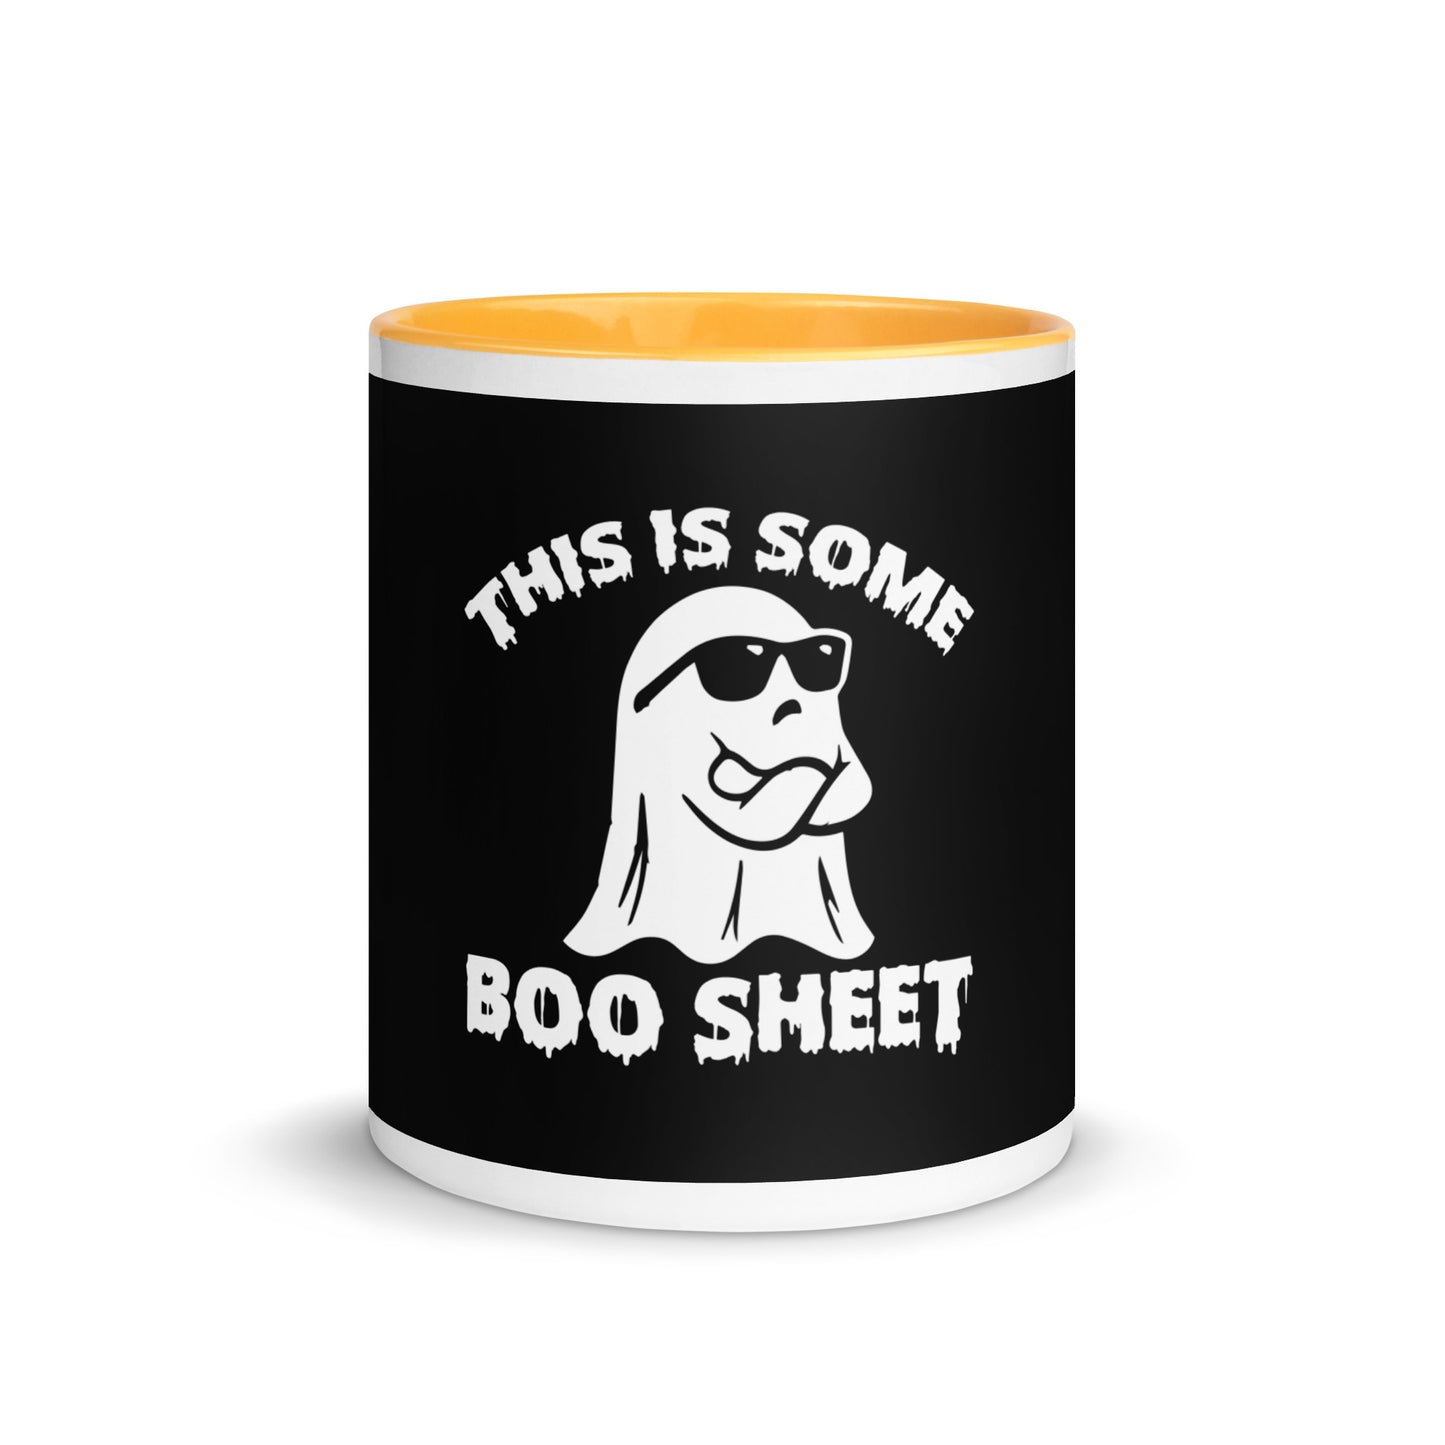 Une tasse Boo-Sheet avec de la couleur à l’intérieur